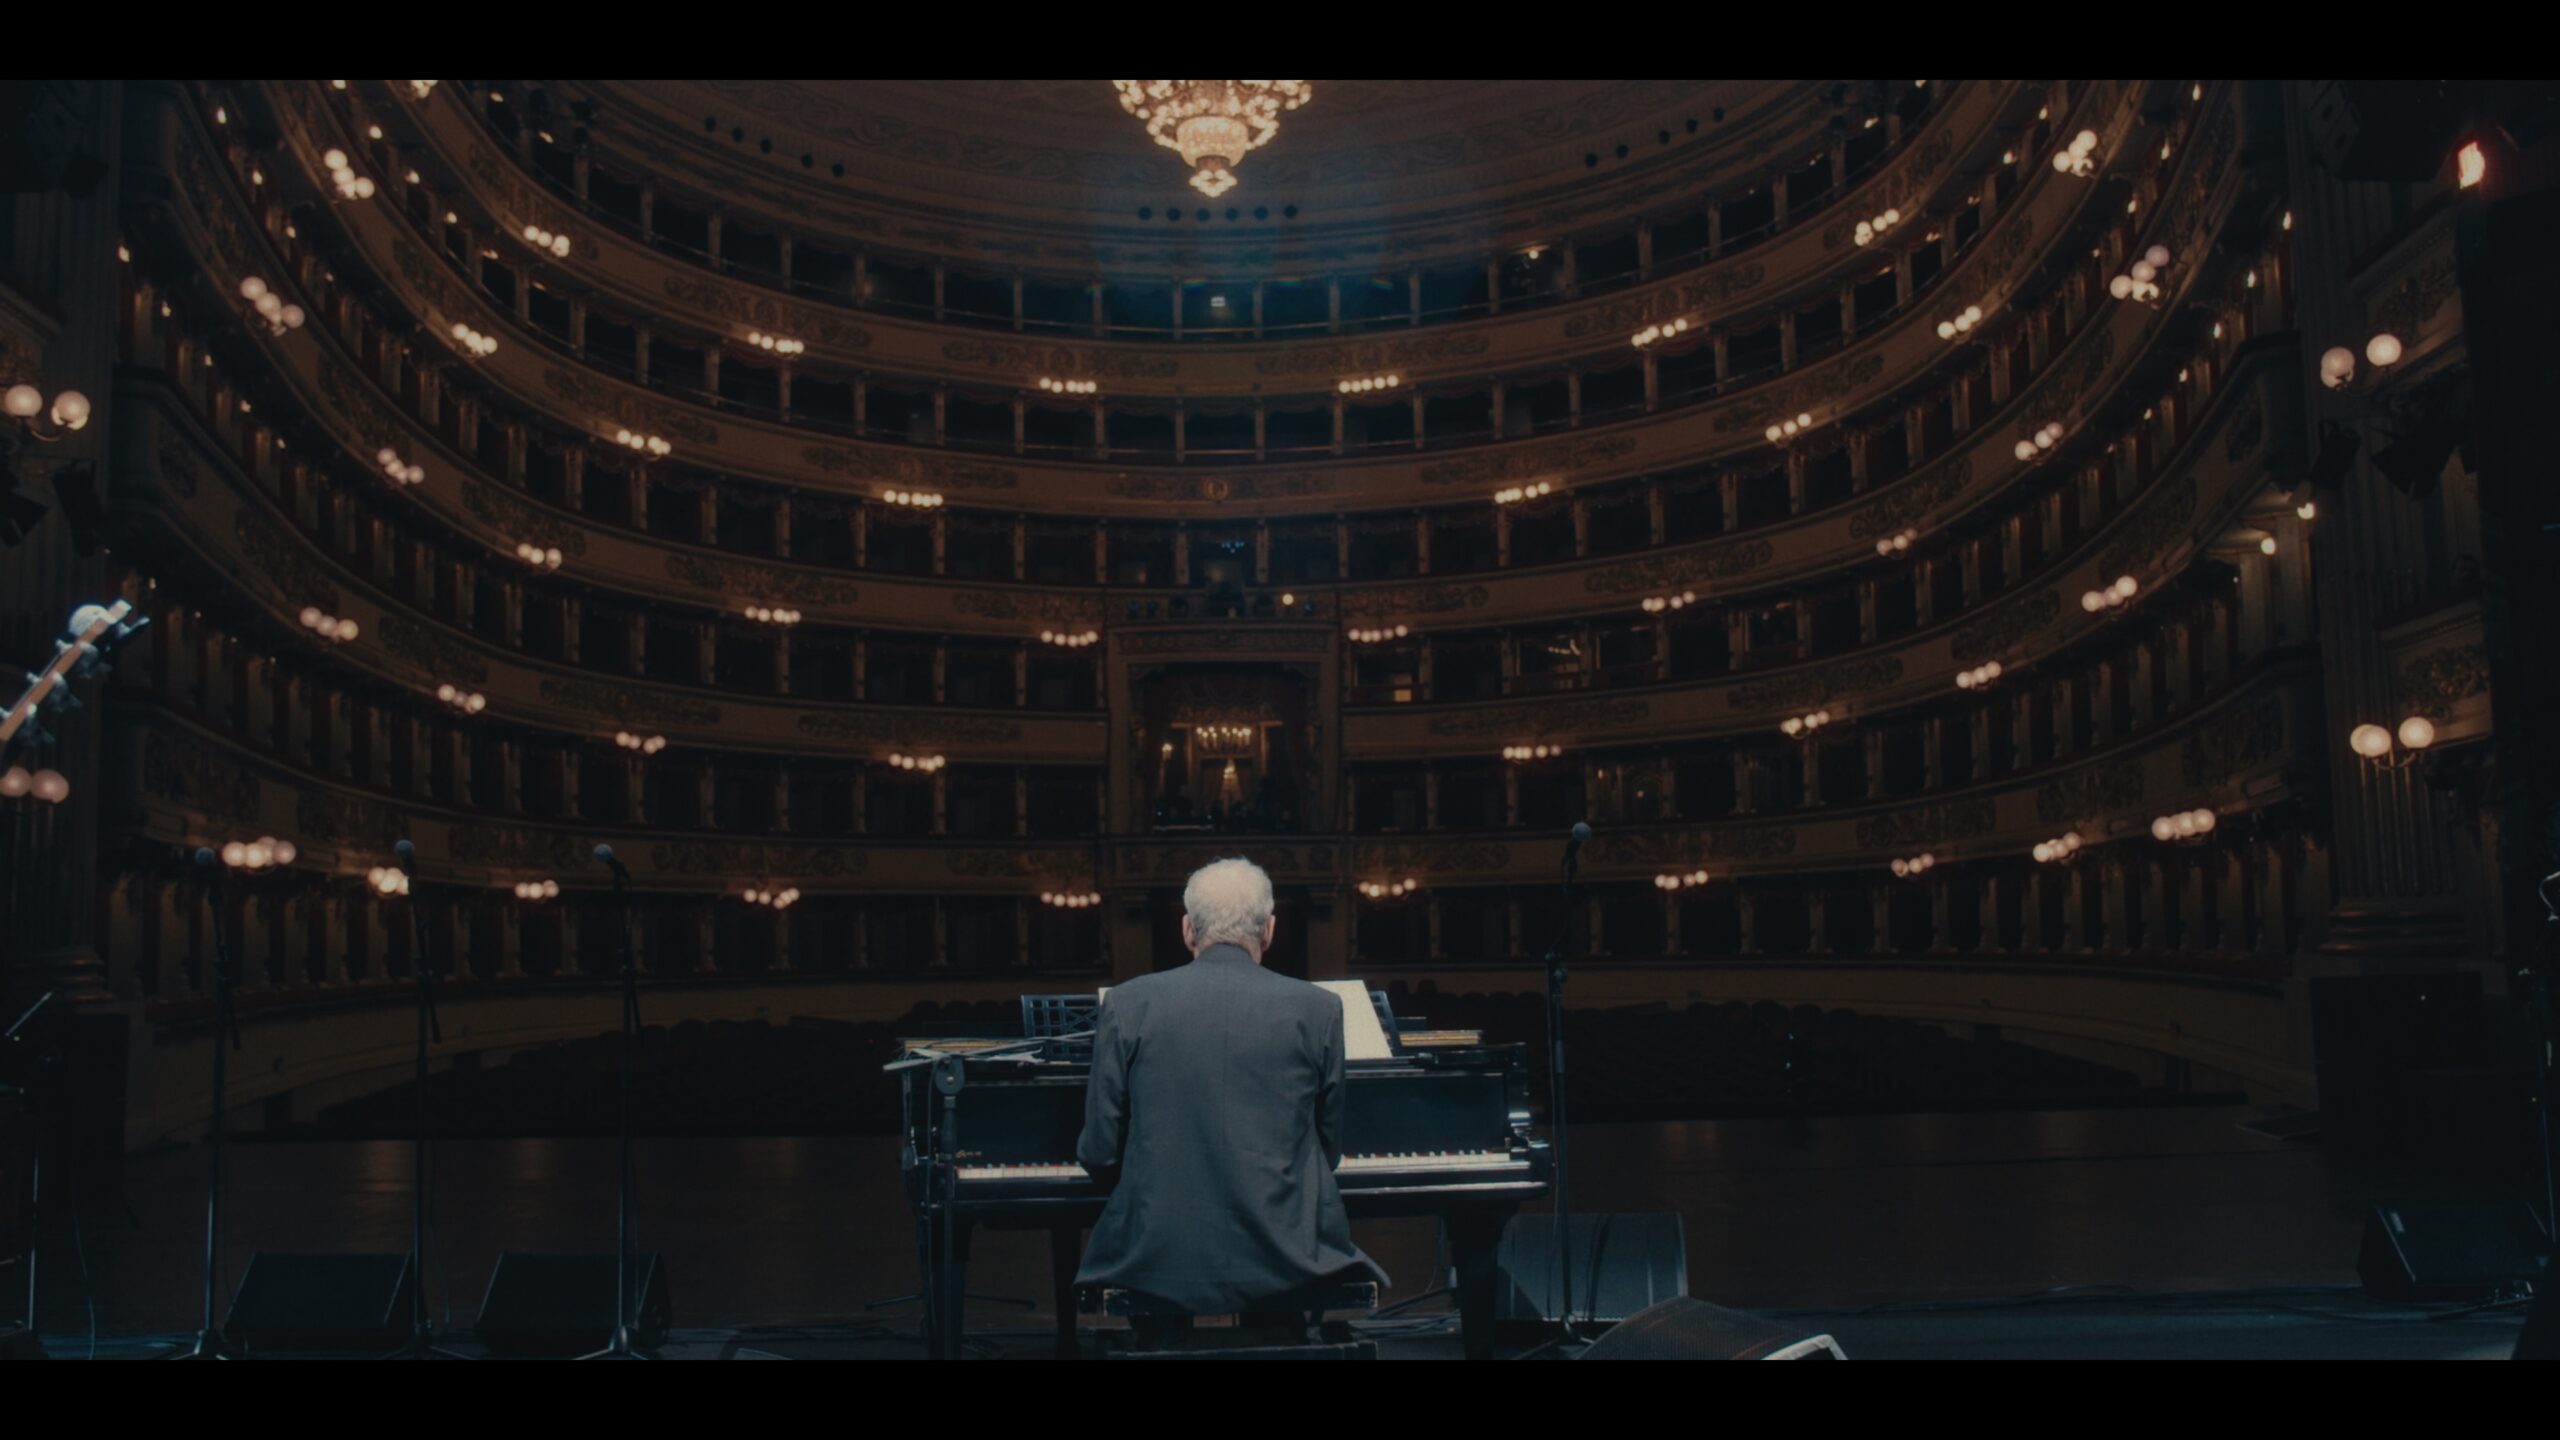 OFF_Paolo Conte alla Scala – Il maestro è nell’ anima_02 – Copia